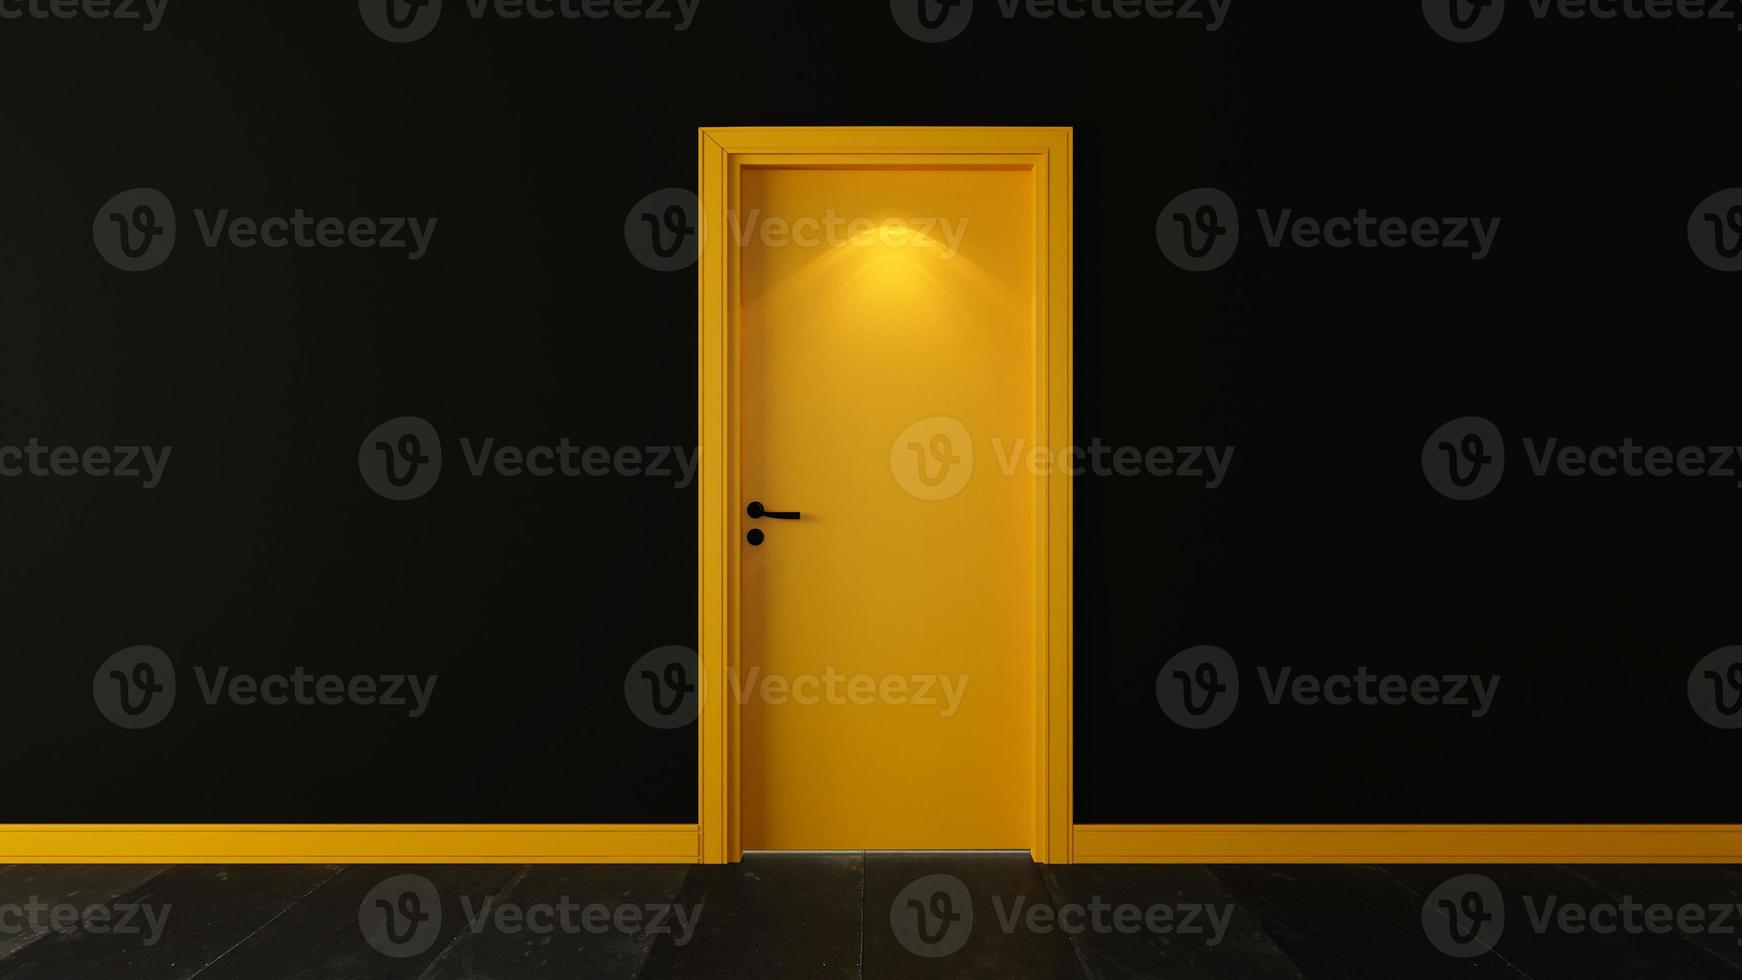 gele houten deur met donkere zwarte muur 3D-rendering foto